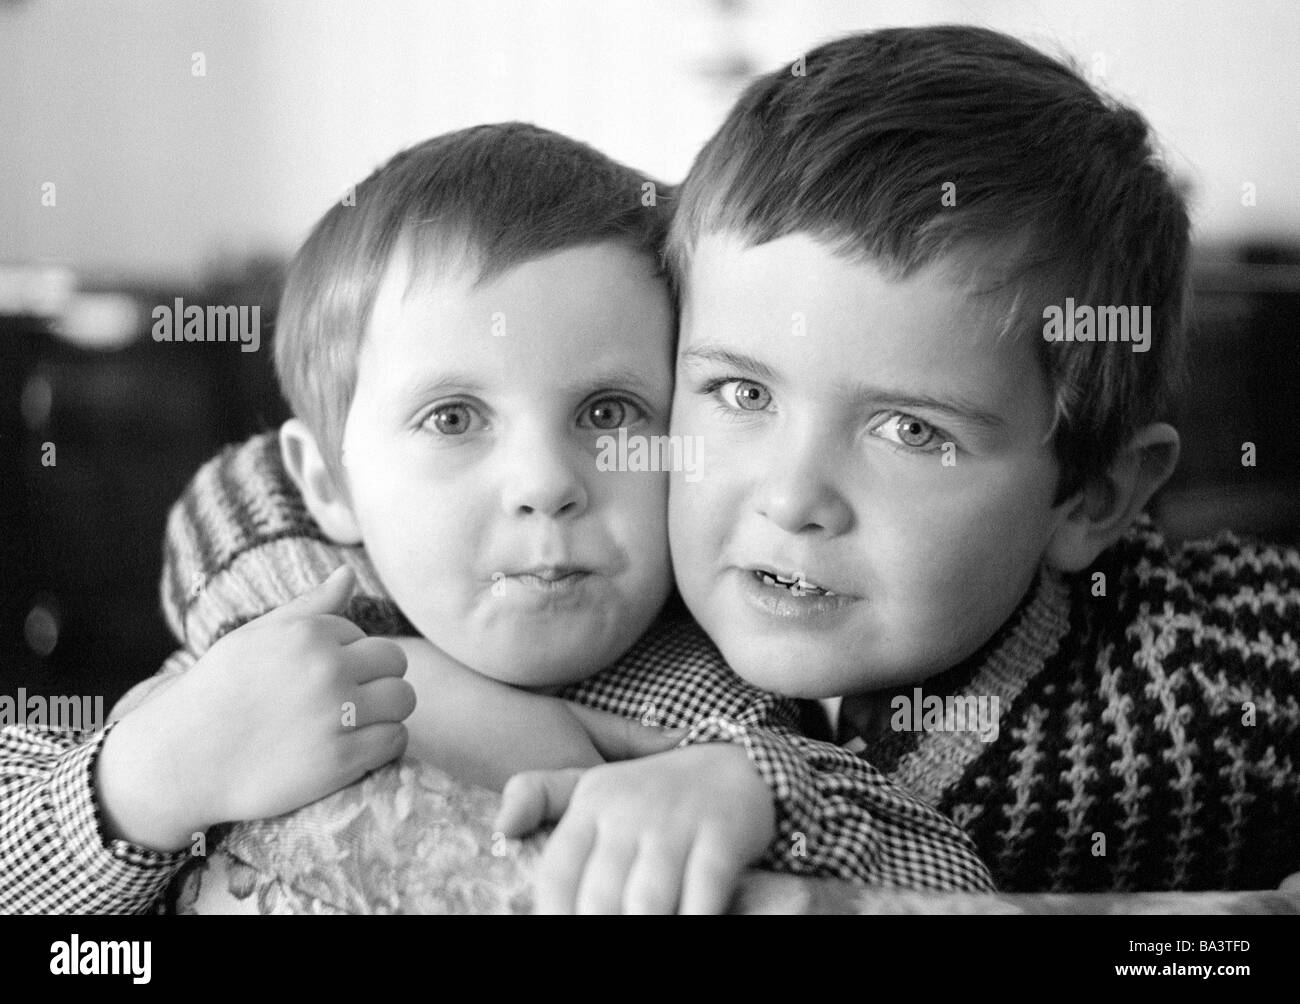 Sechziger Jahre, Menschen, Kinder, kleines Maedchen und kleiner Junge, Portraet, Birgit, Frank Stock Photo